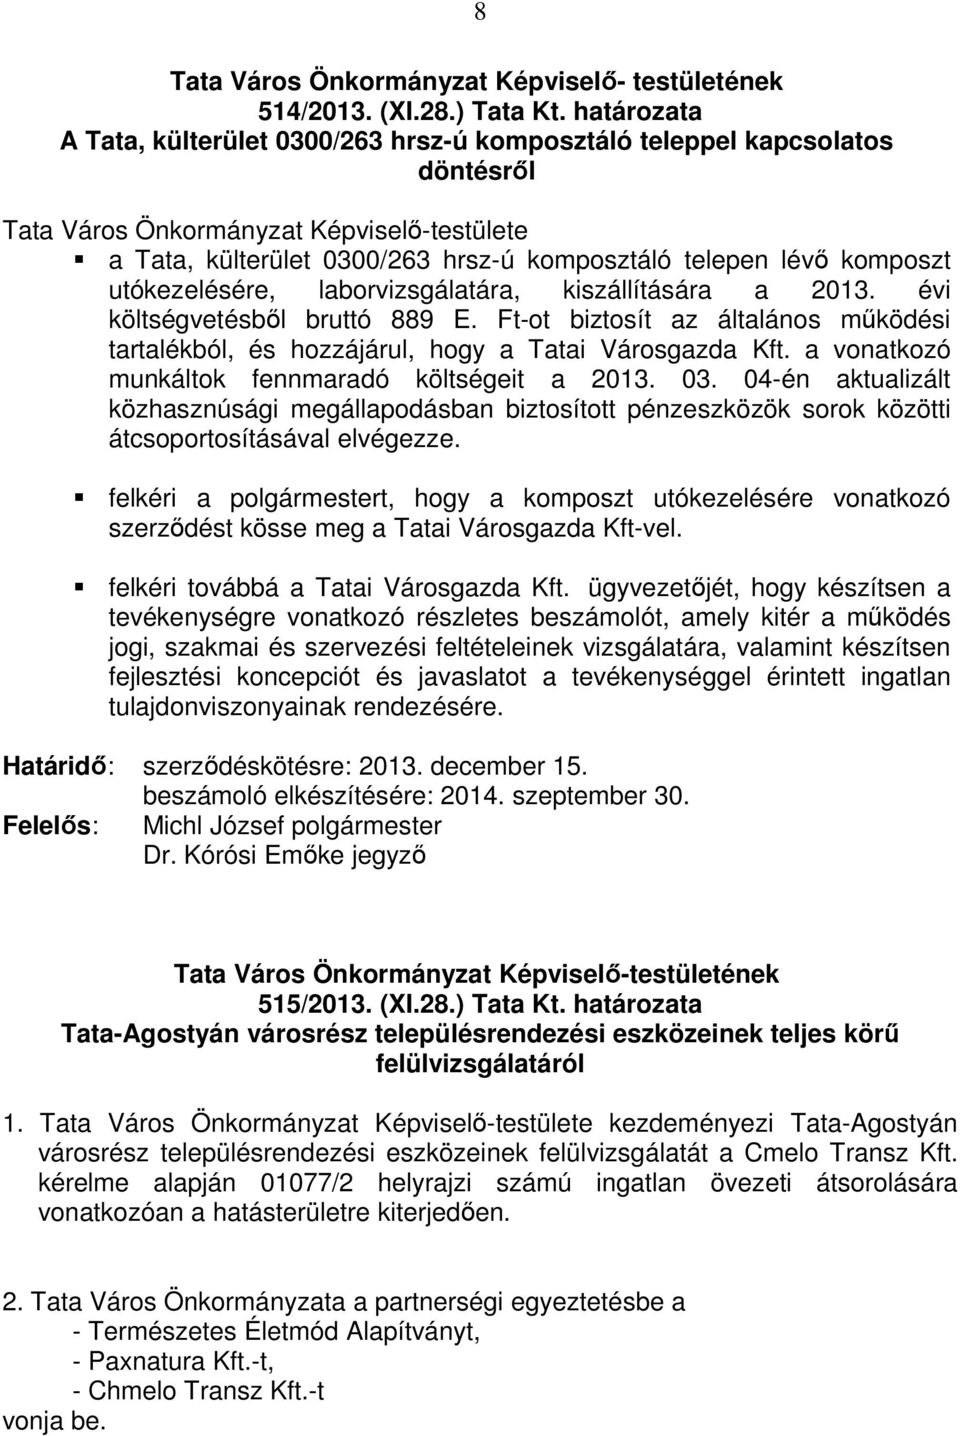 komposzt utókezelésére, laborvizsgálatára, kiszállítására a 2013. évi költségvetésből bruttó 889 E. Ft-ot biztosít az általános működési tartalékból, és hozzájárul, hogy a Tatai Városgazda Kft.